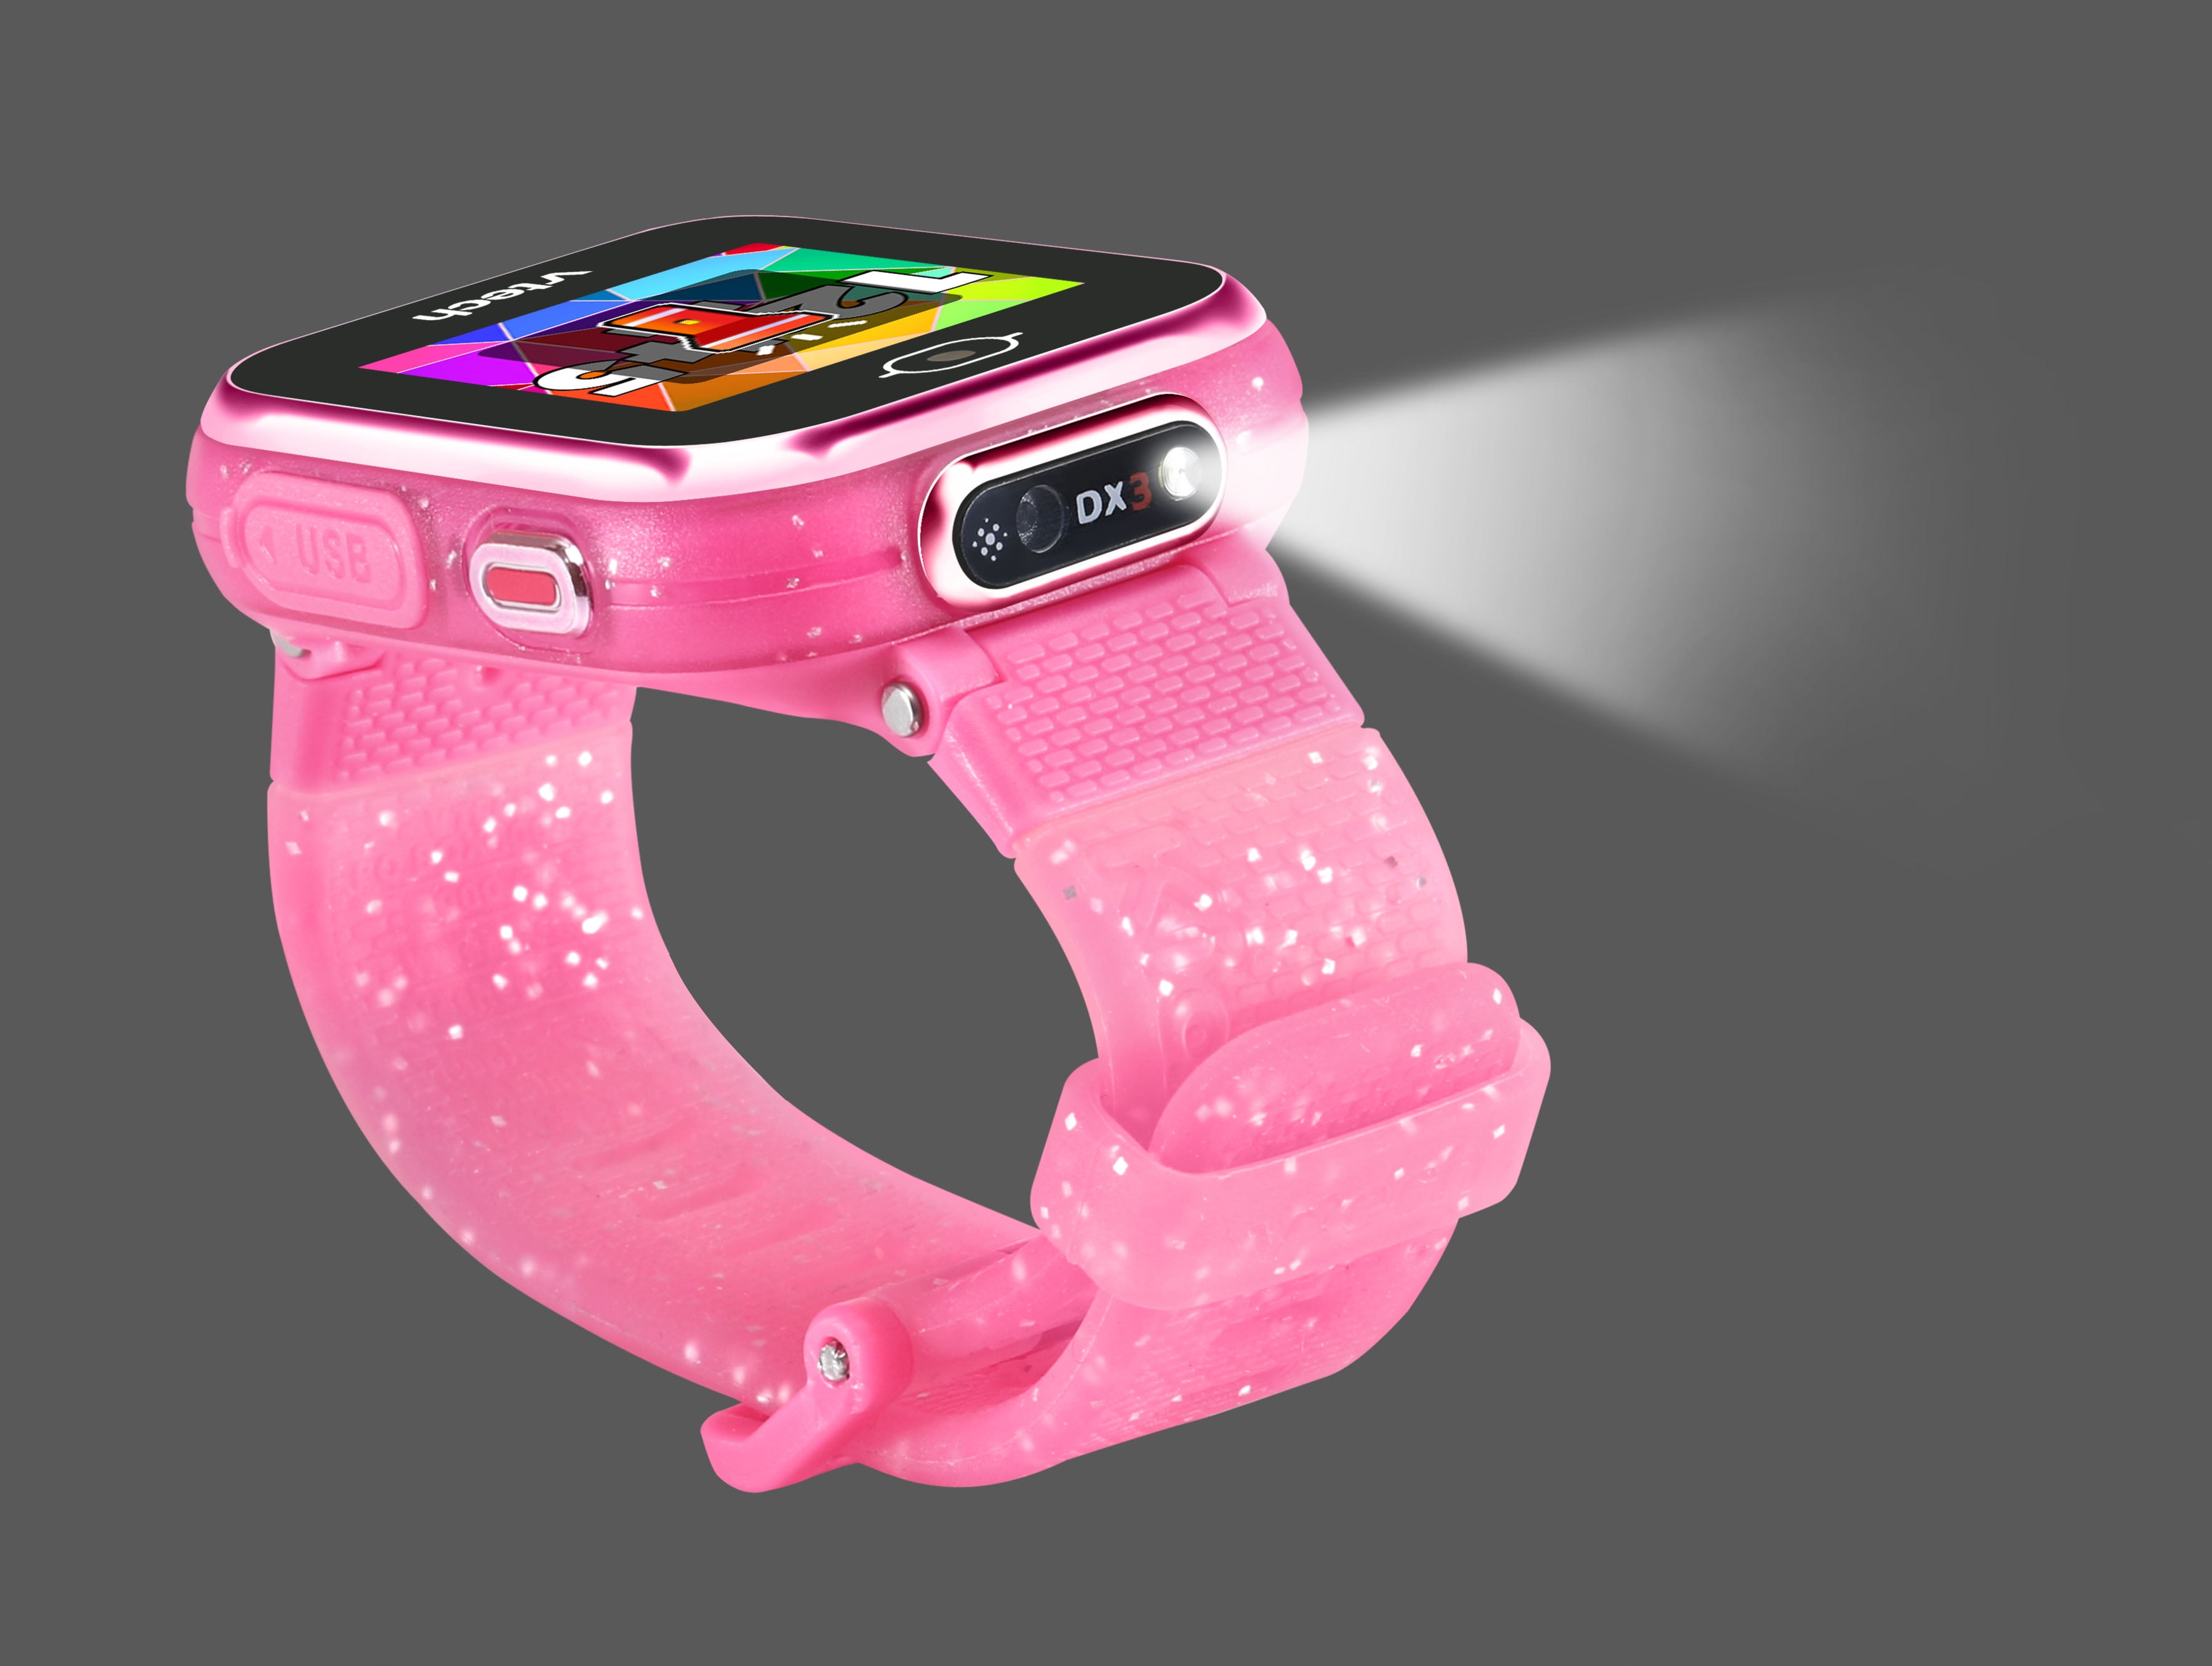 VTech Kidizoom Smartwatch DX Pink 